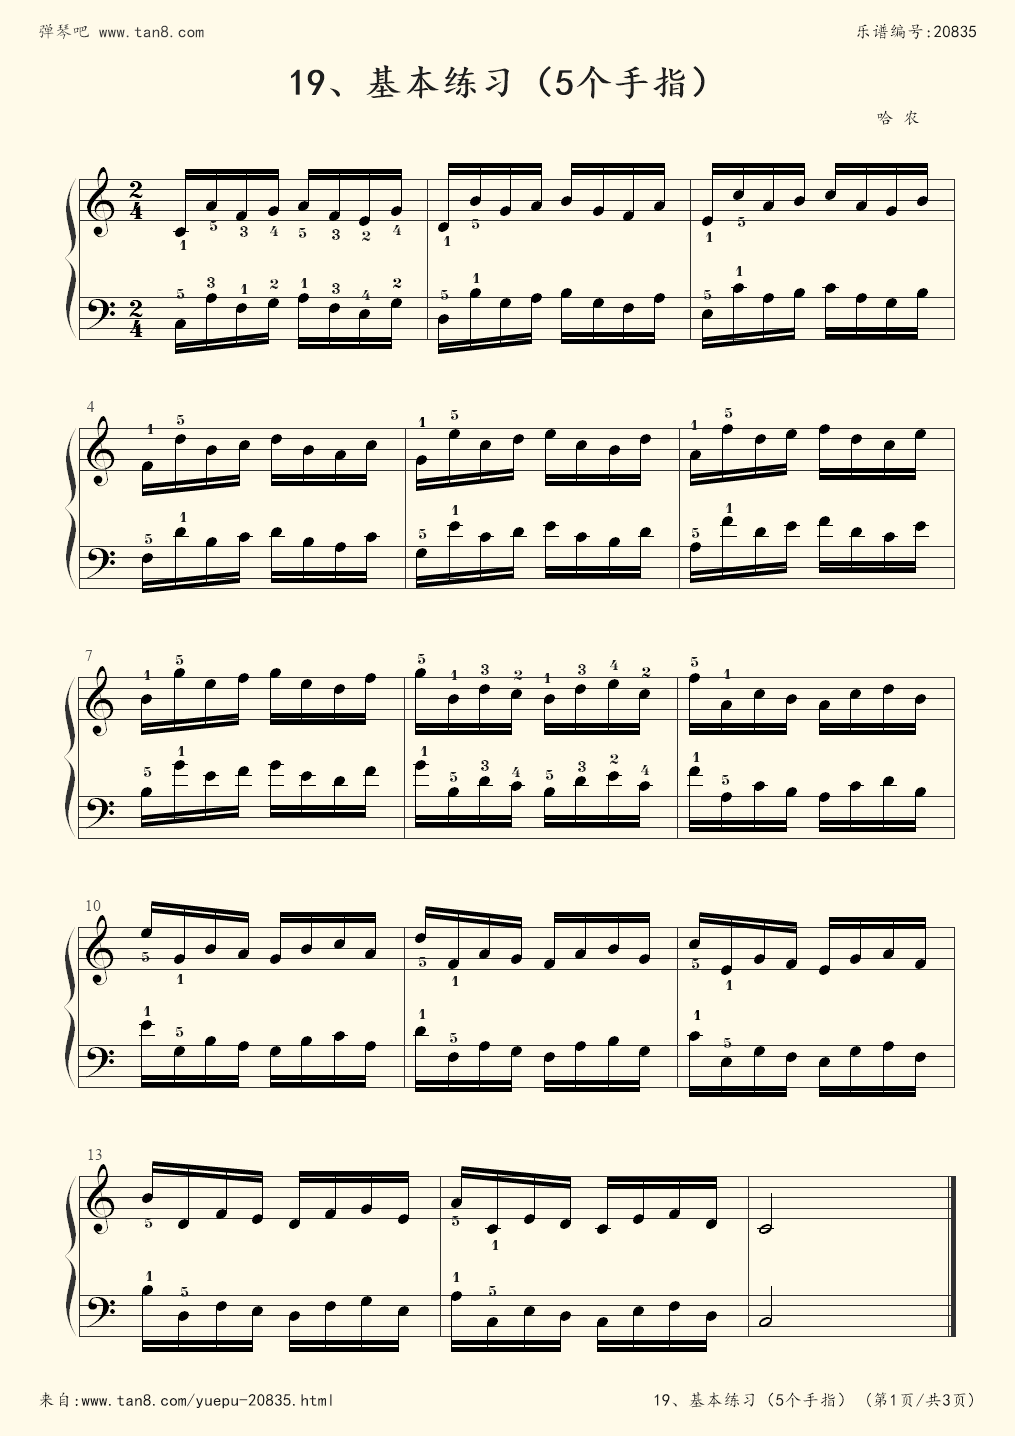 钢琴指法练习(钢琴弹奏的指法)